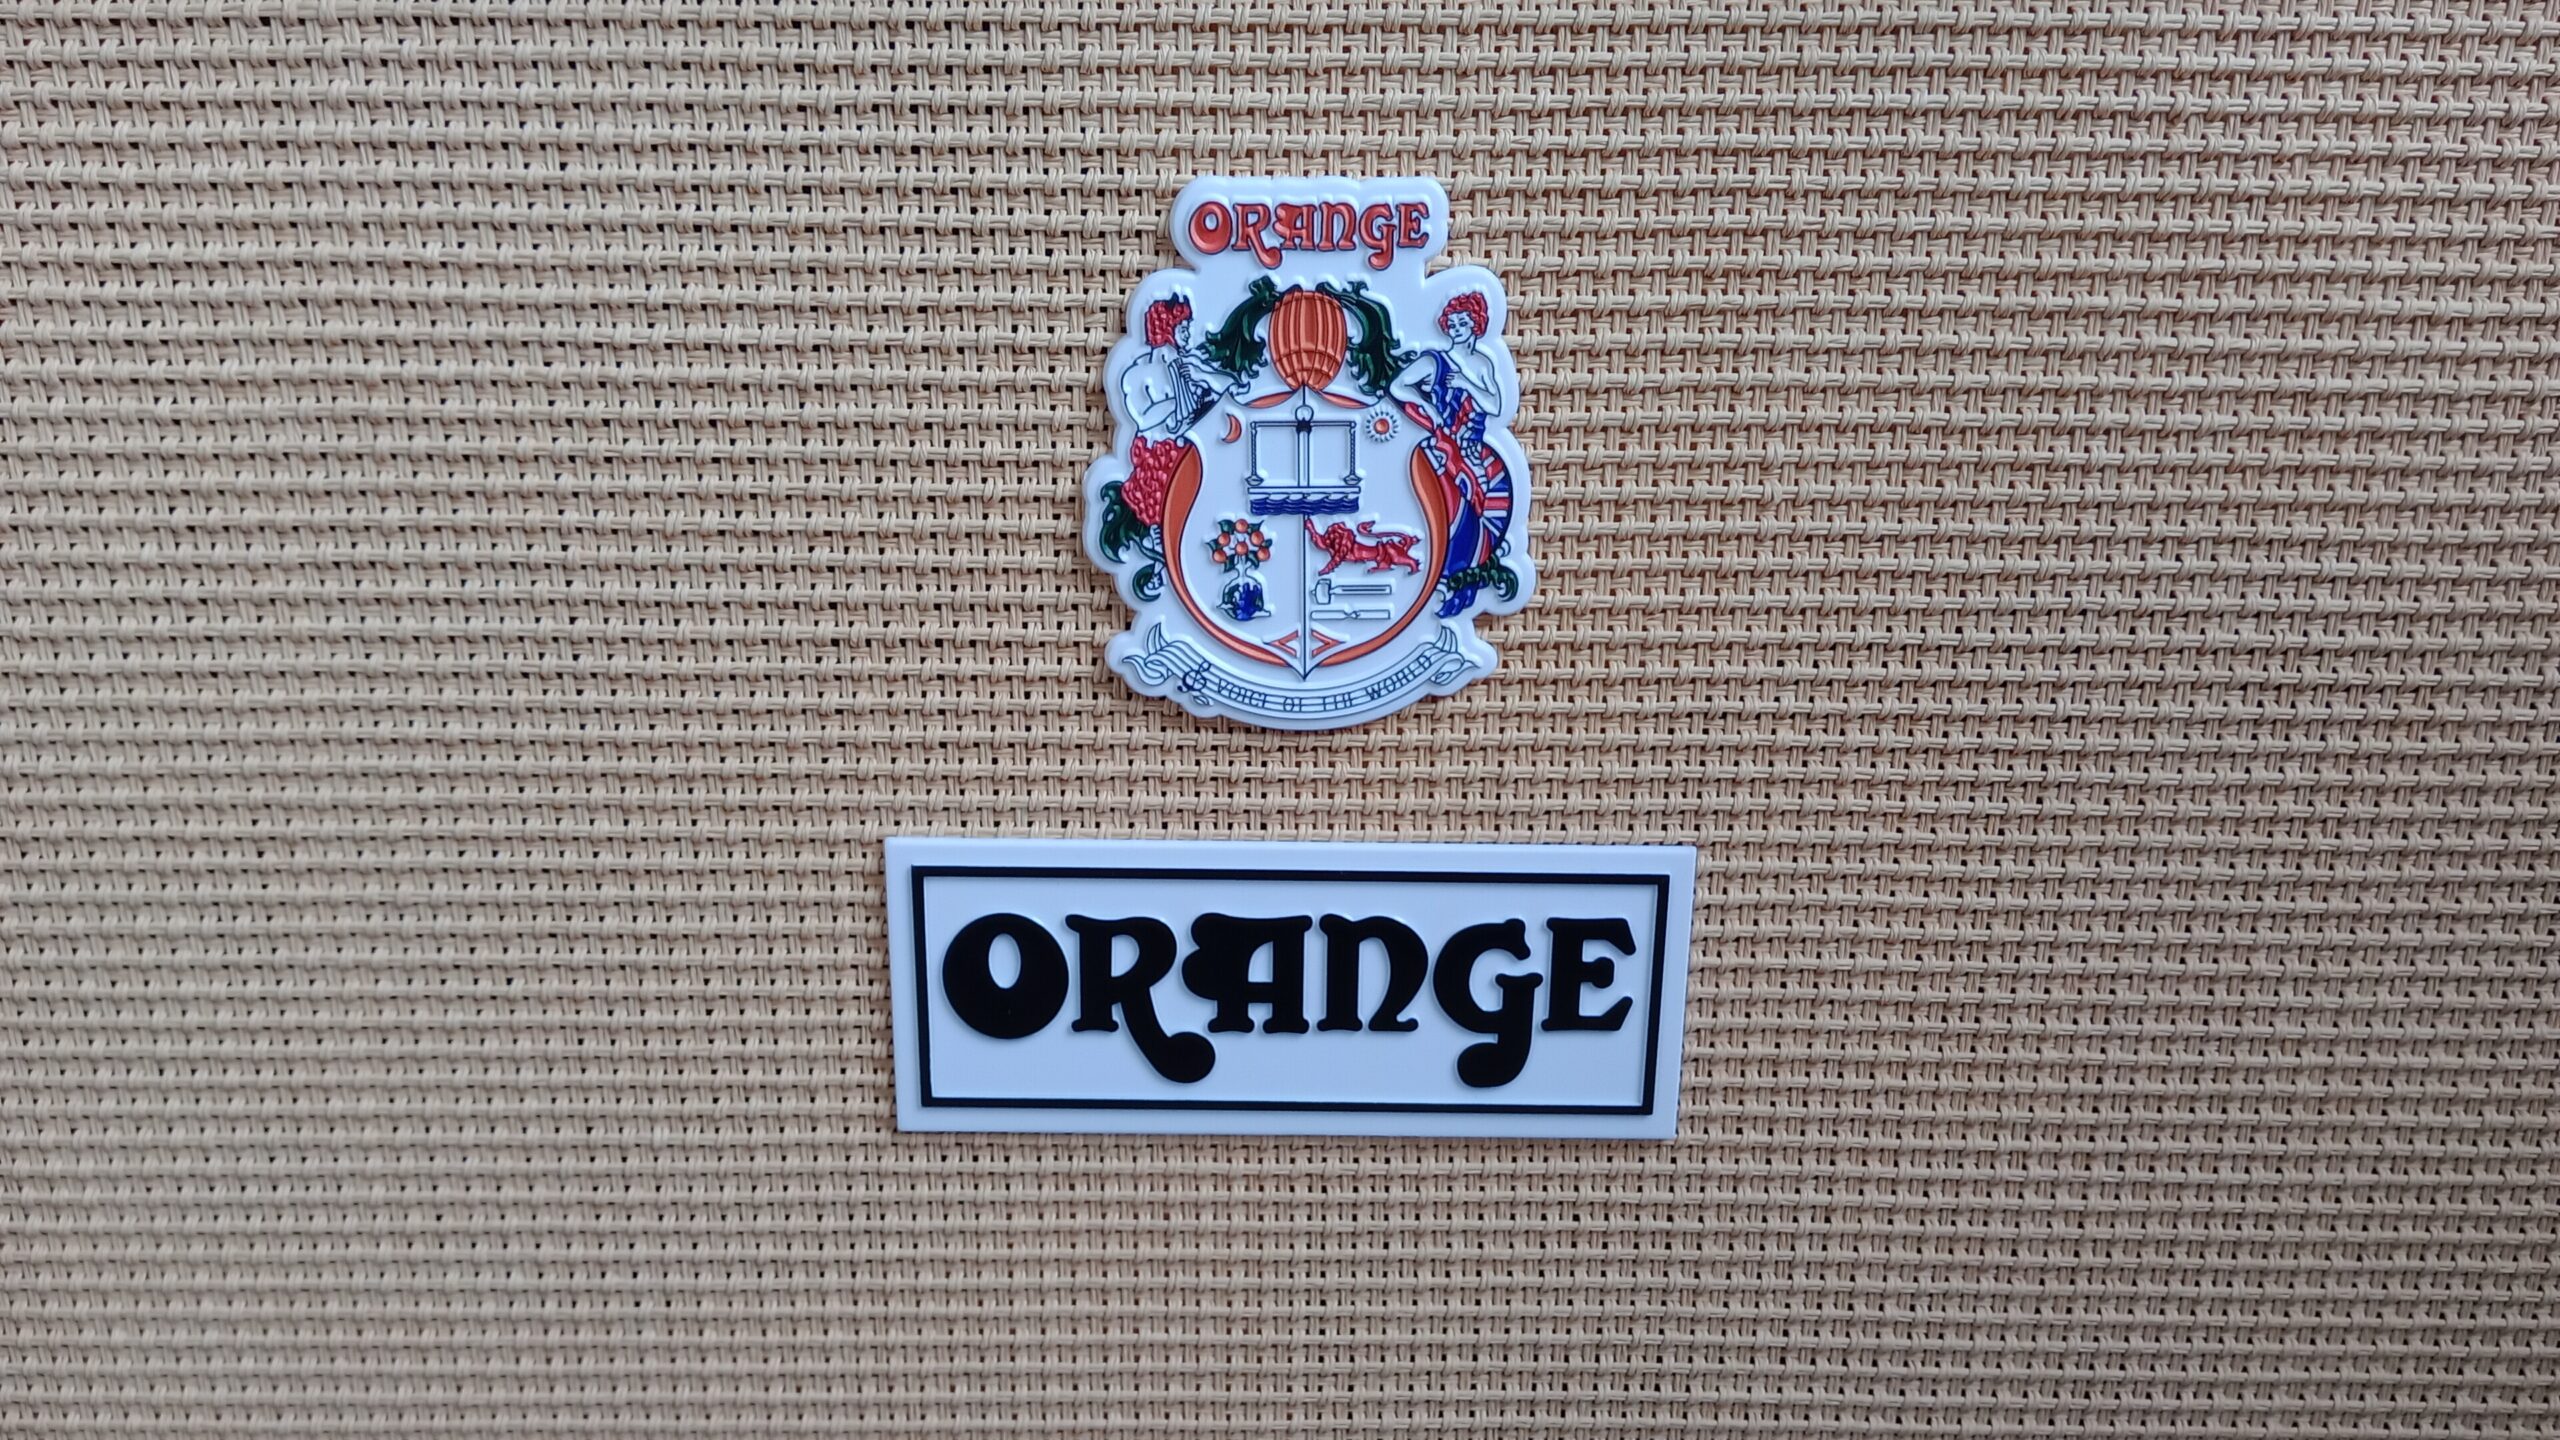 Le badge sur un ampli de guitare qui dit 'Orange'